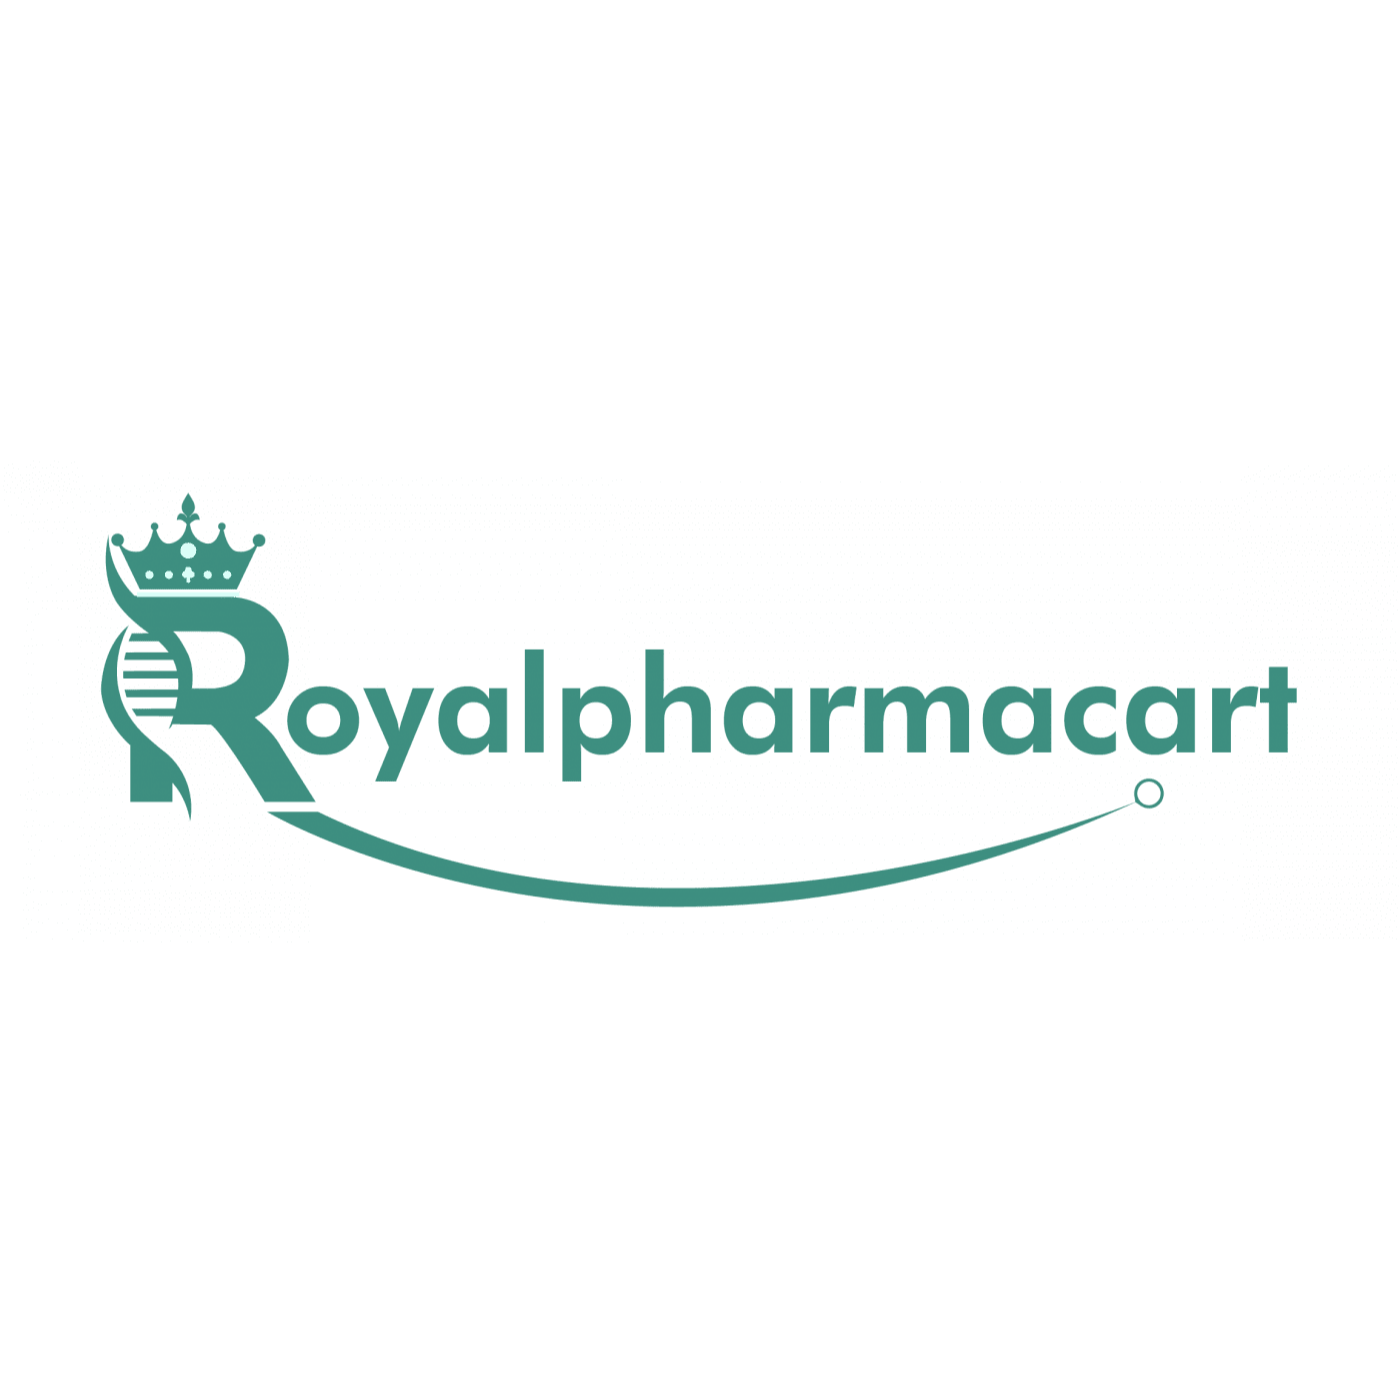 Company logo of royalpharmacart